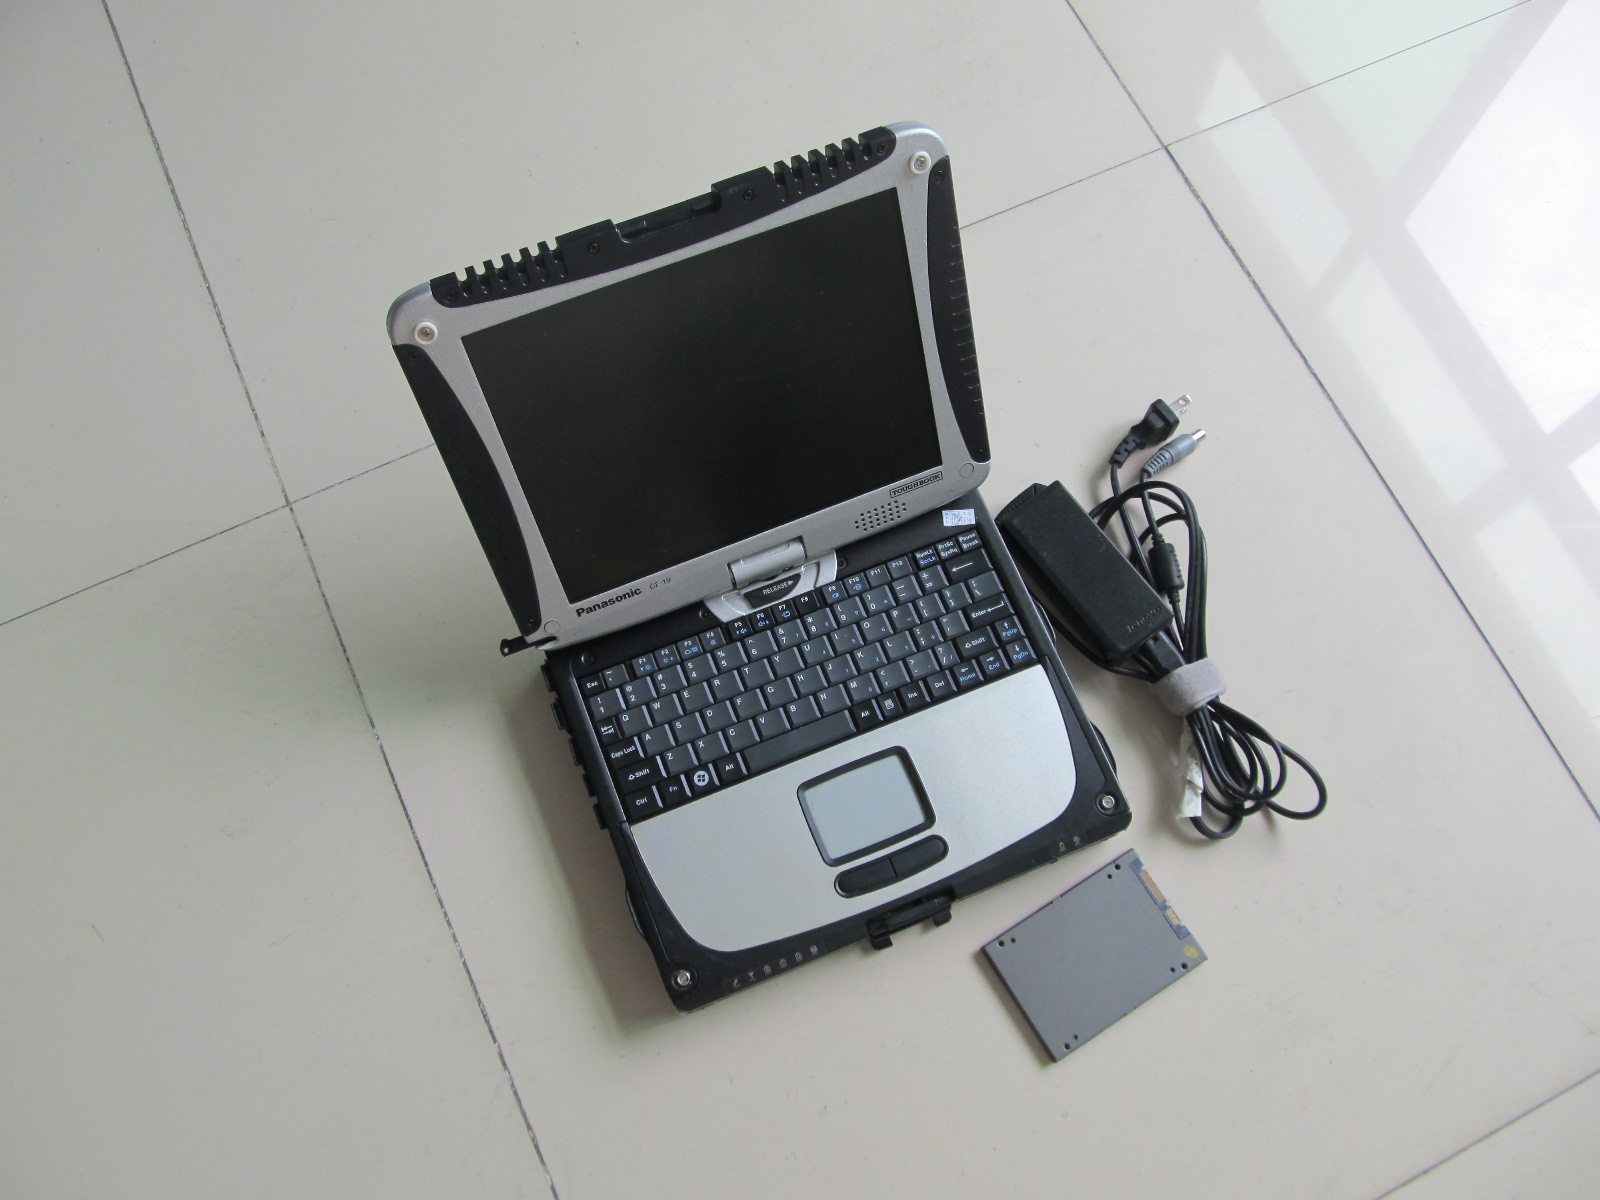 Ferramenta de diagnóstico MB Star C3 com laptop CF19 Touch Screen Super SSD Toughbook Ram 4G pronto para usar